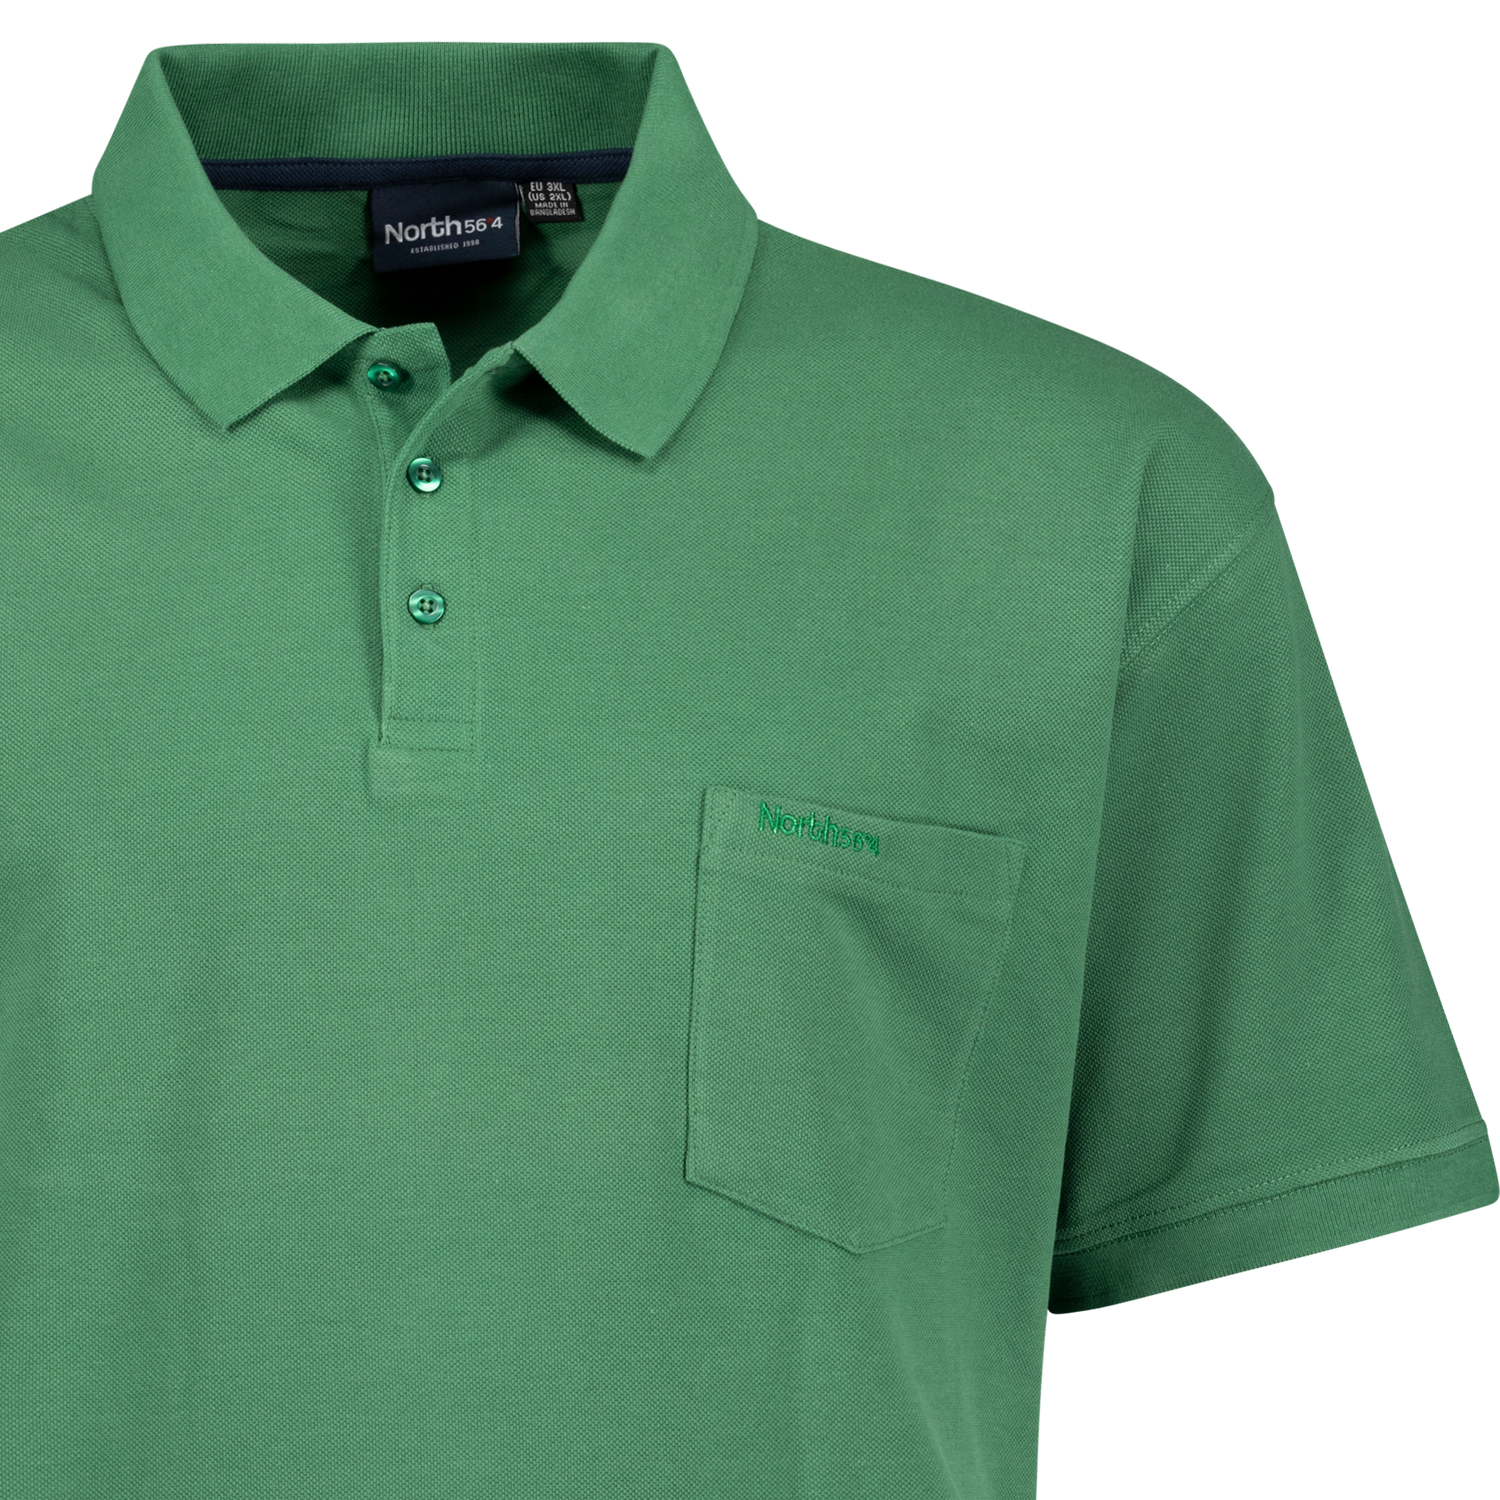 Pique Poloshirt in grün für Herren von Greyes/North 56°4 Übergrößen 3XL - 8XL